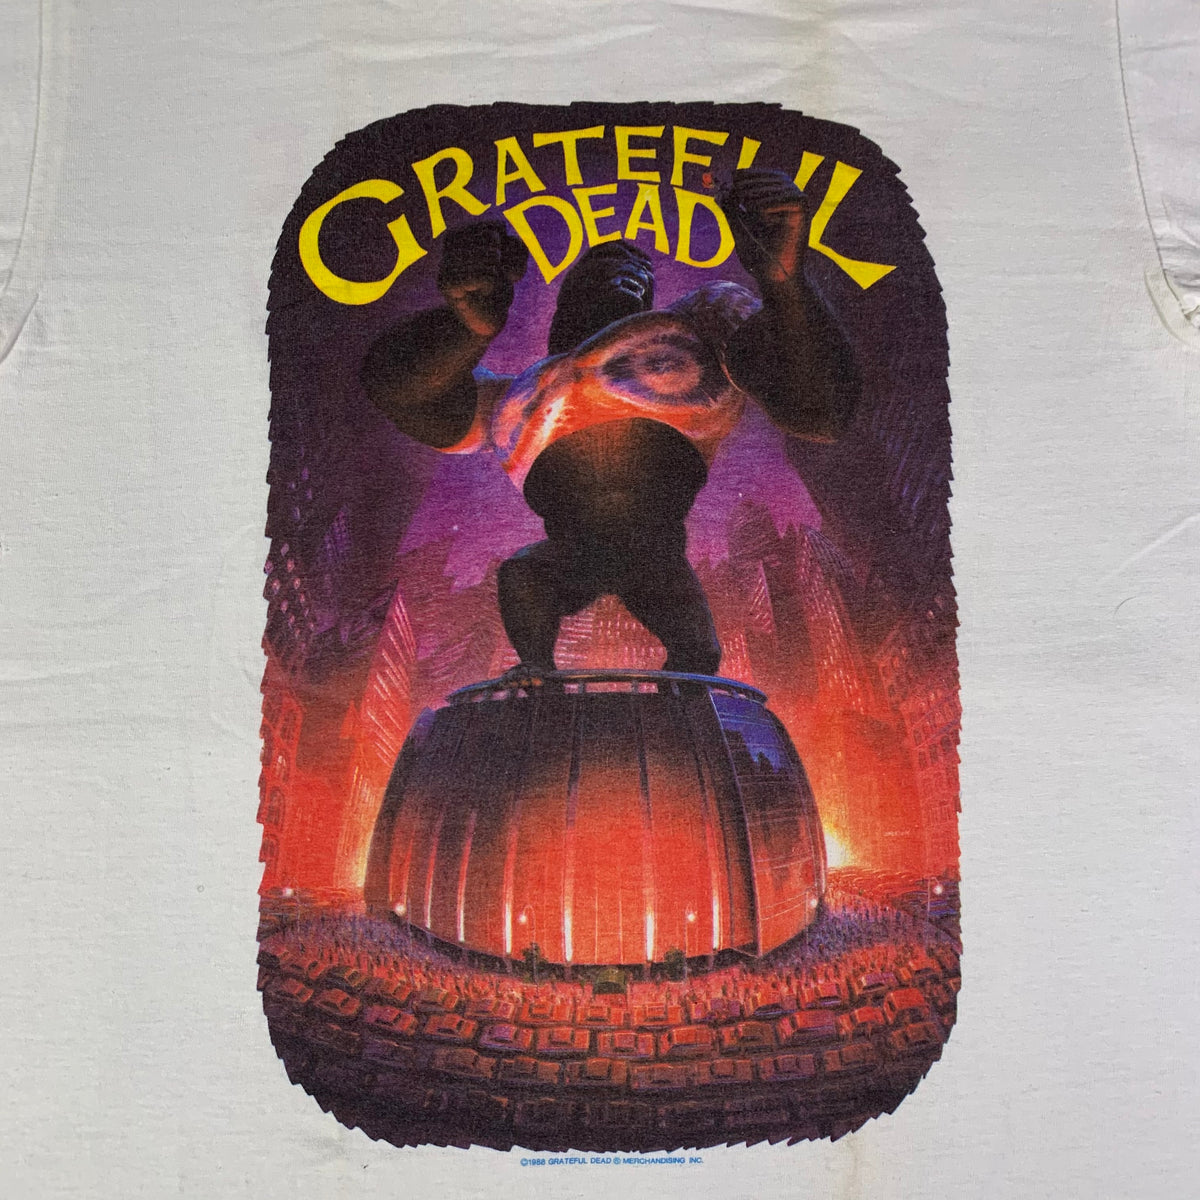 Vintage Grateful Dead &quot;Madison Square Garden&quot; T-Shirt